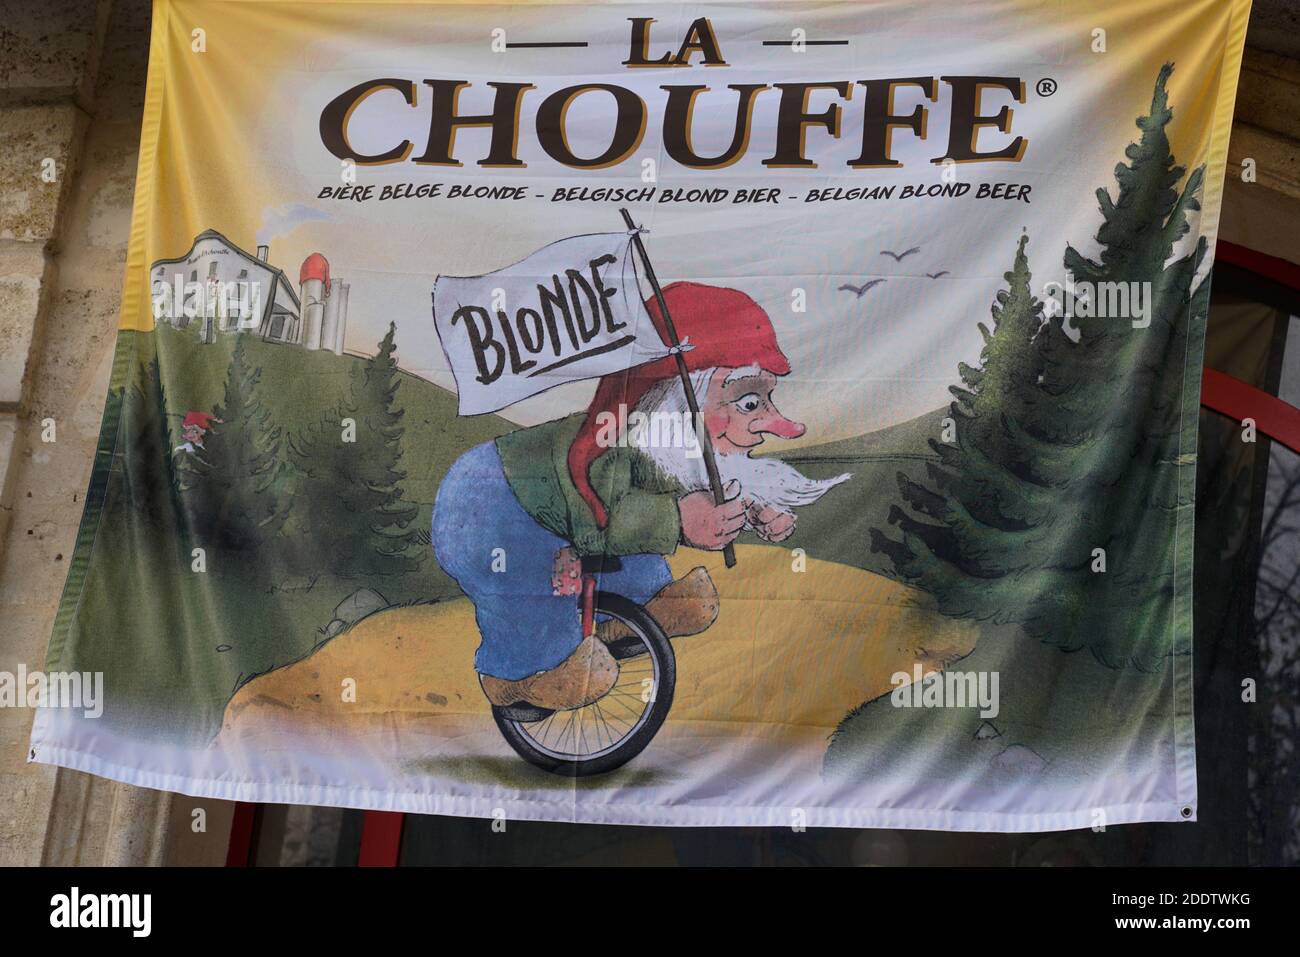 Bordeaux , Aquitaine / Francia - 11 11 2020 : il logo la Chouffe e segno sulla bandiera del Belgio birra bionda Foto Stock